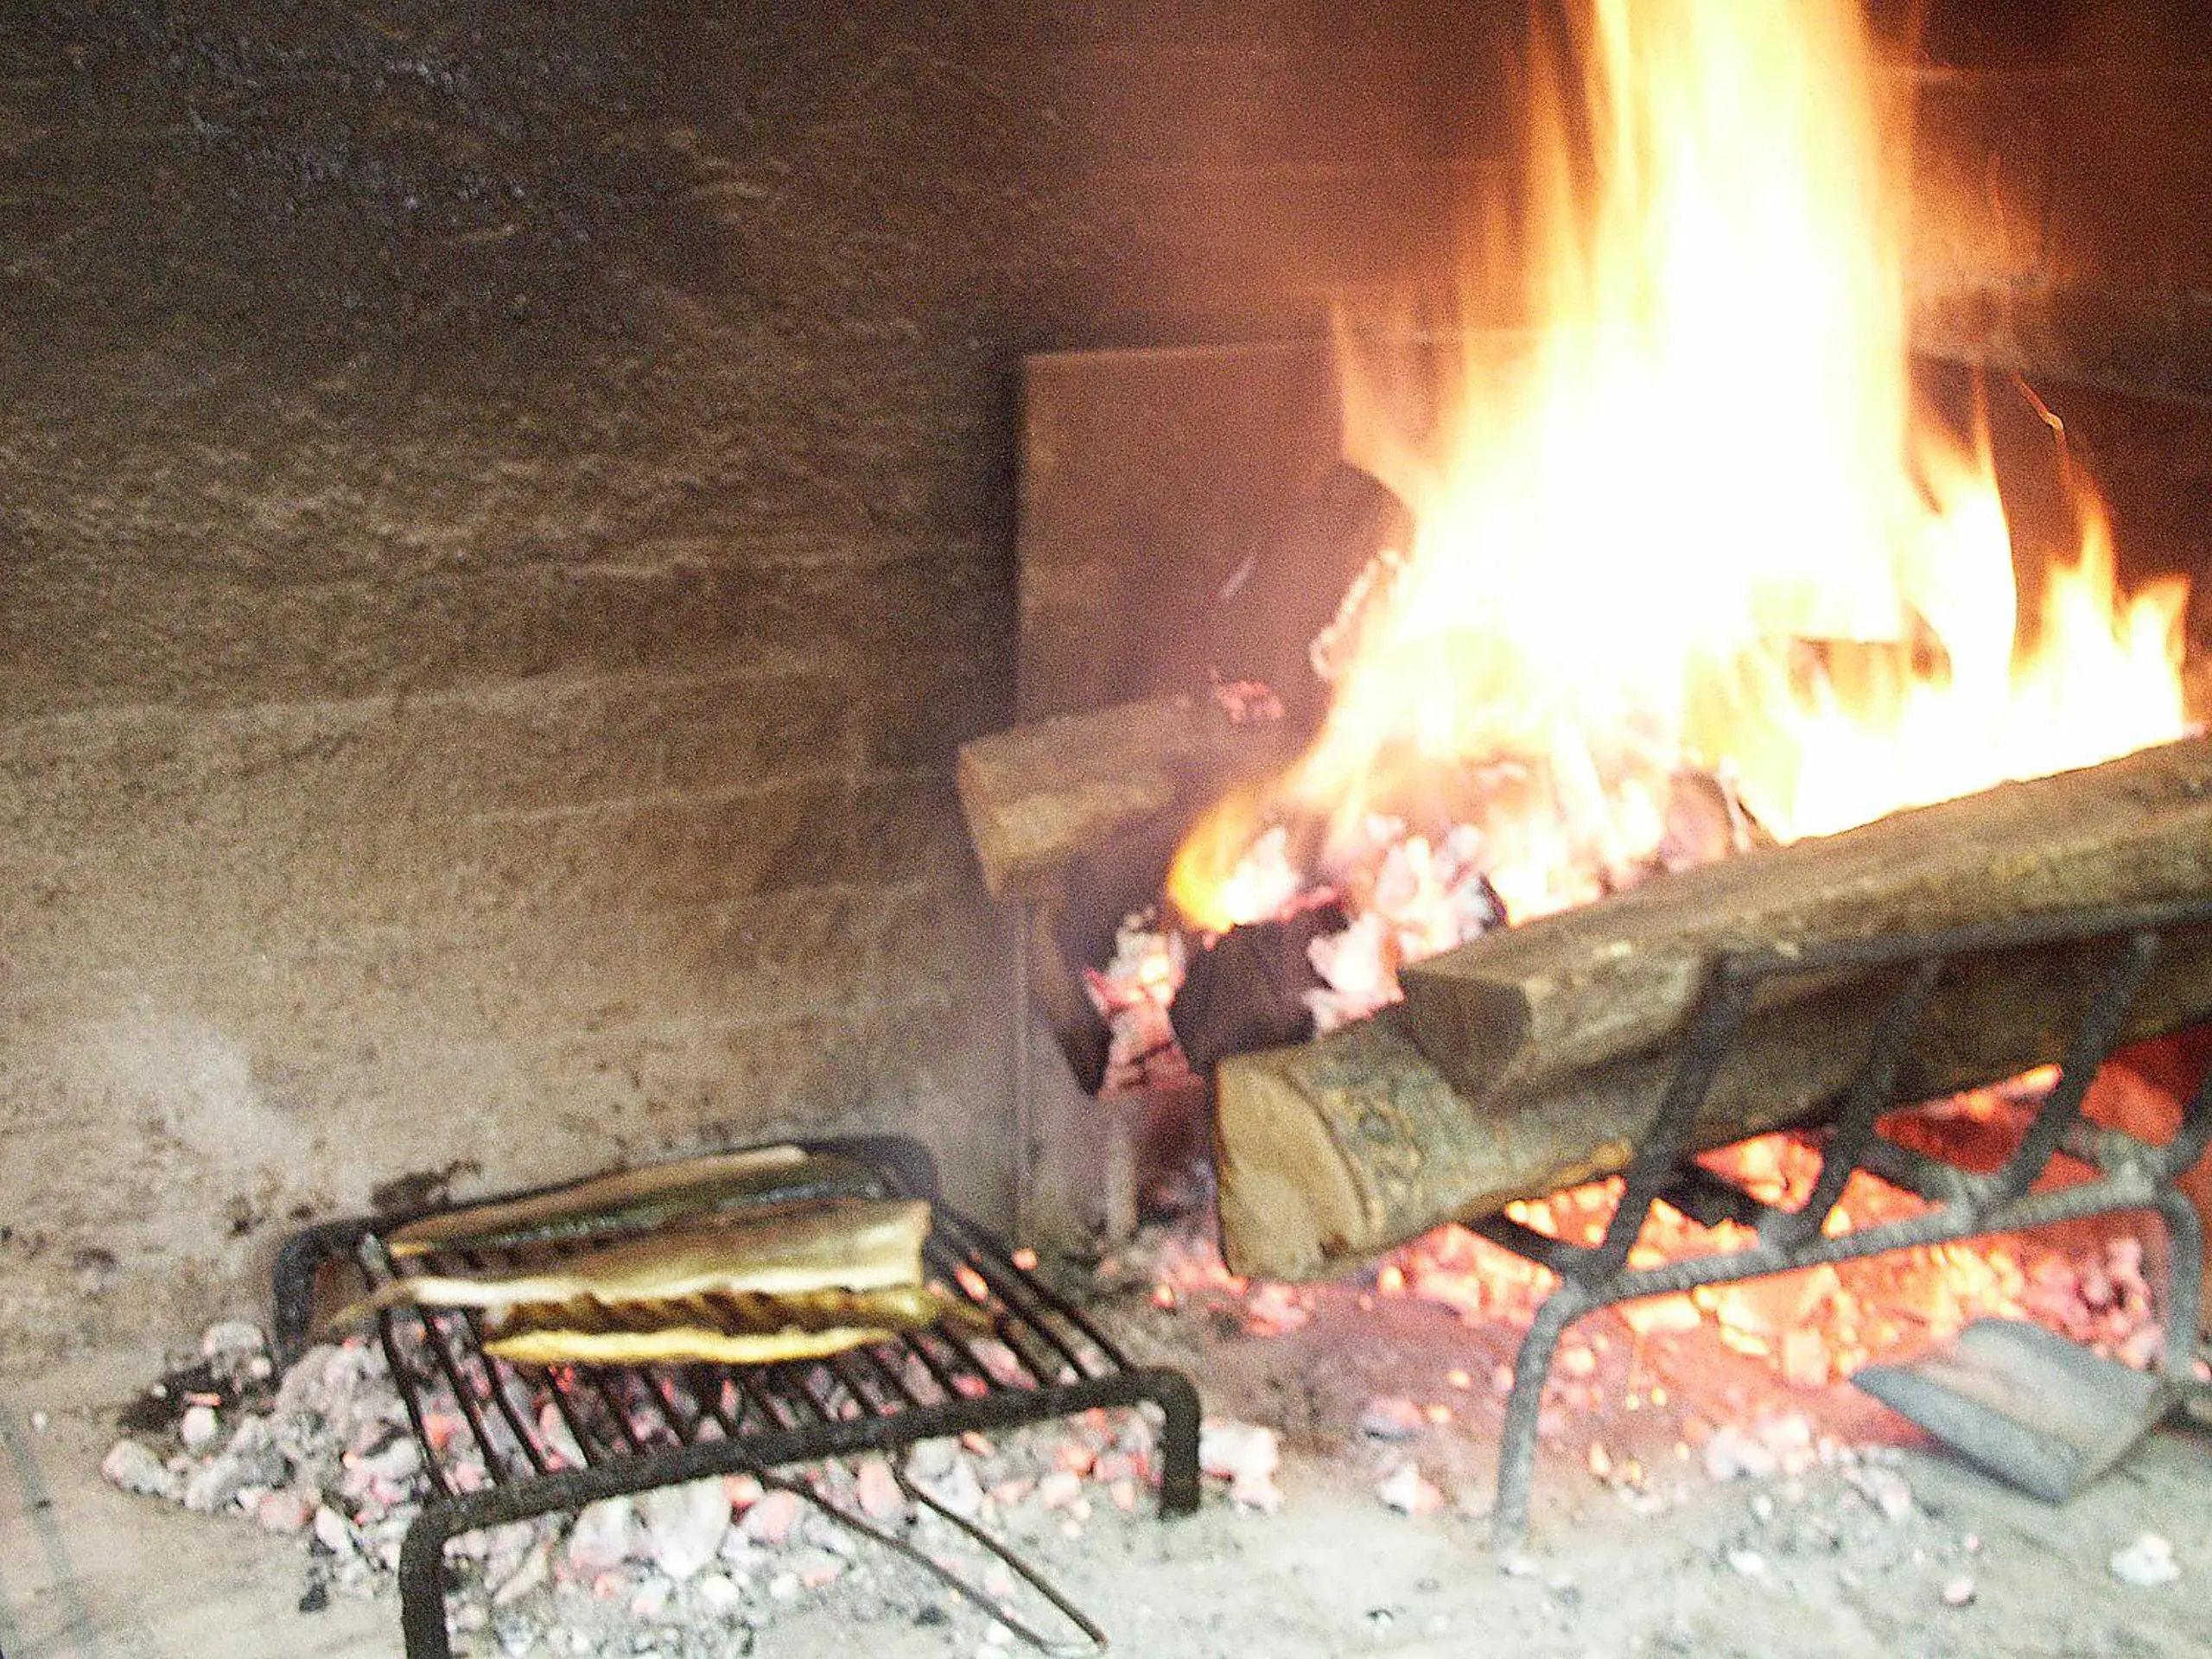 Other, BBQ Facilities in Albergo Ristorante Papa